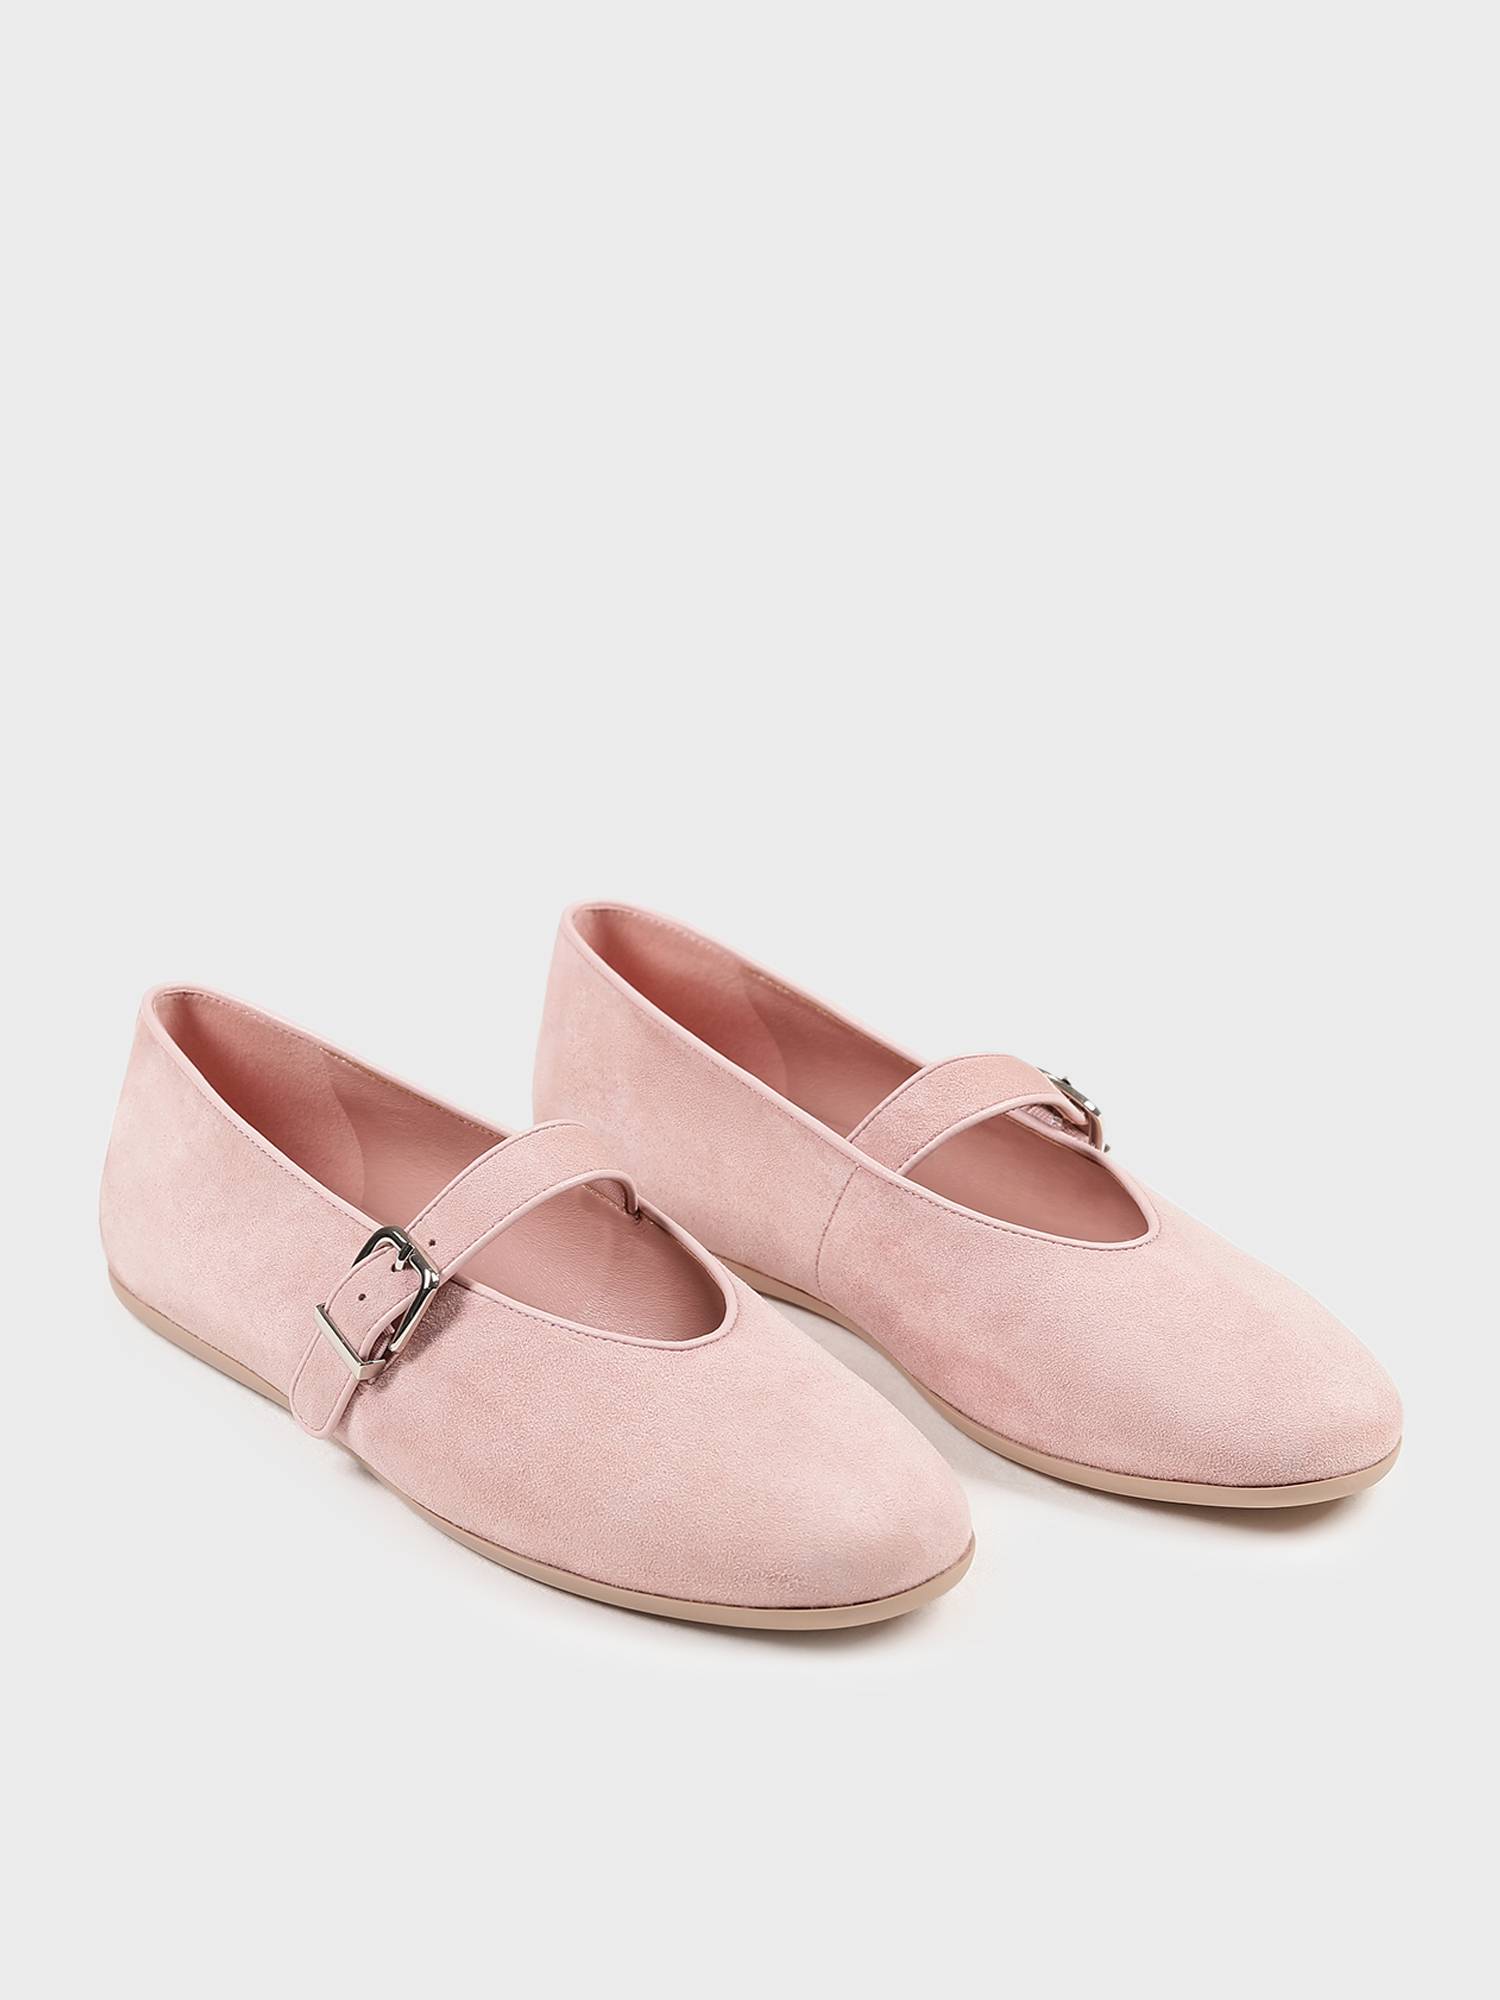 Туфли Mary Jane от Present & Simple, цвет клубничный